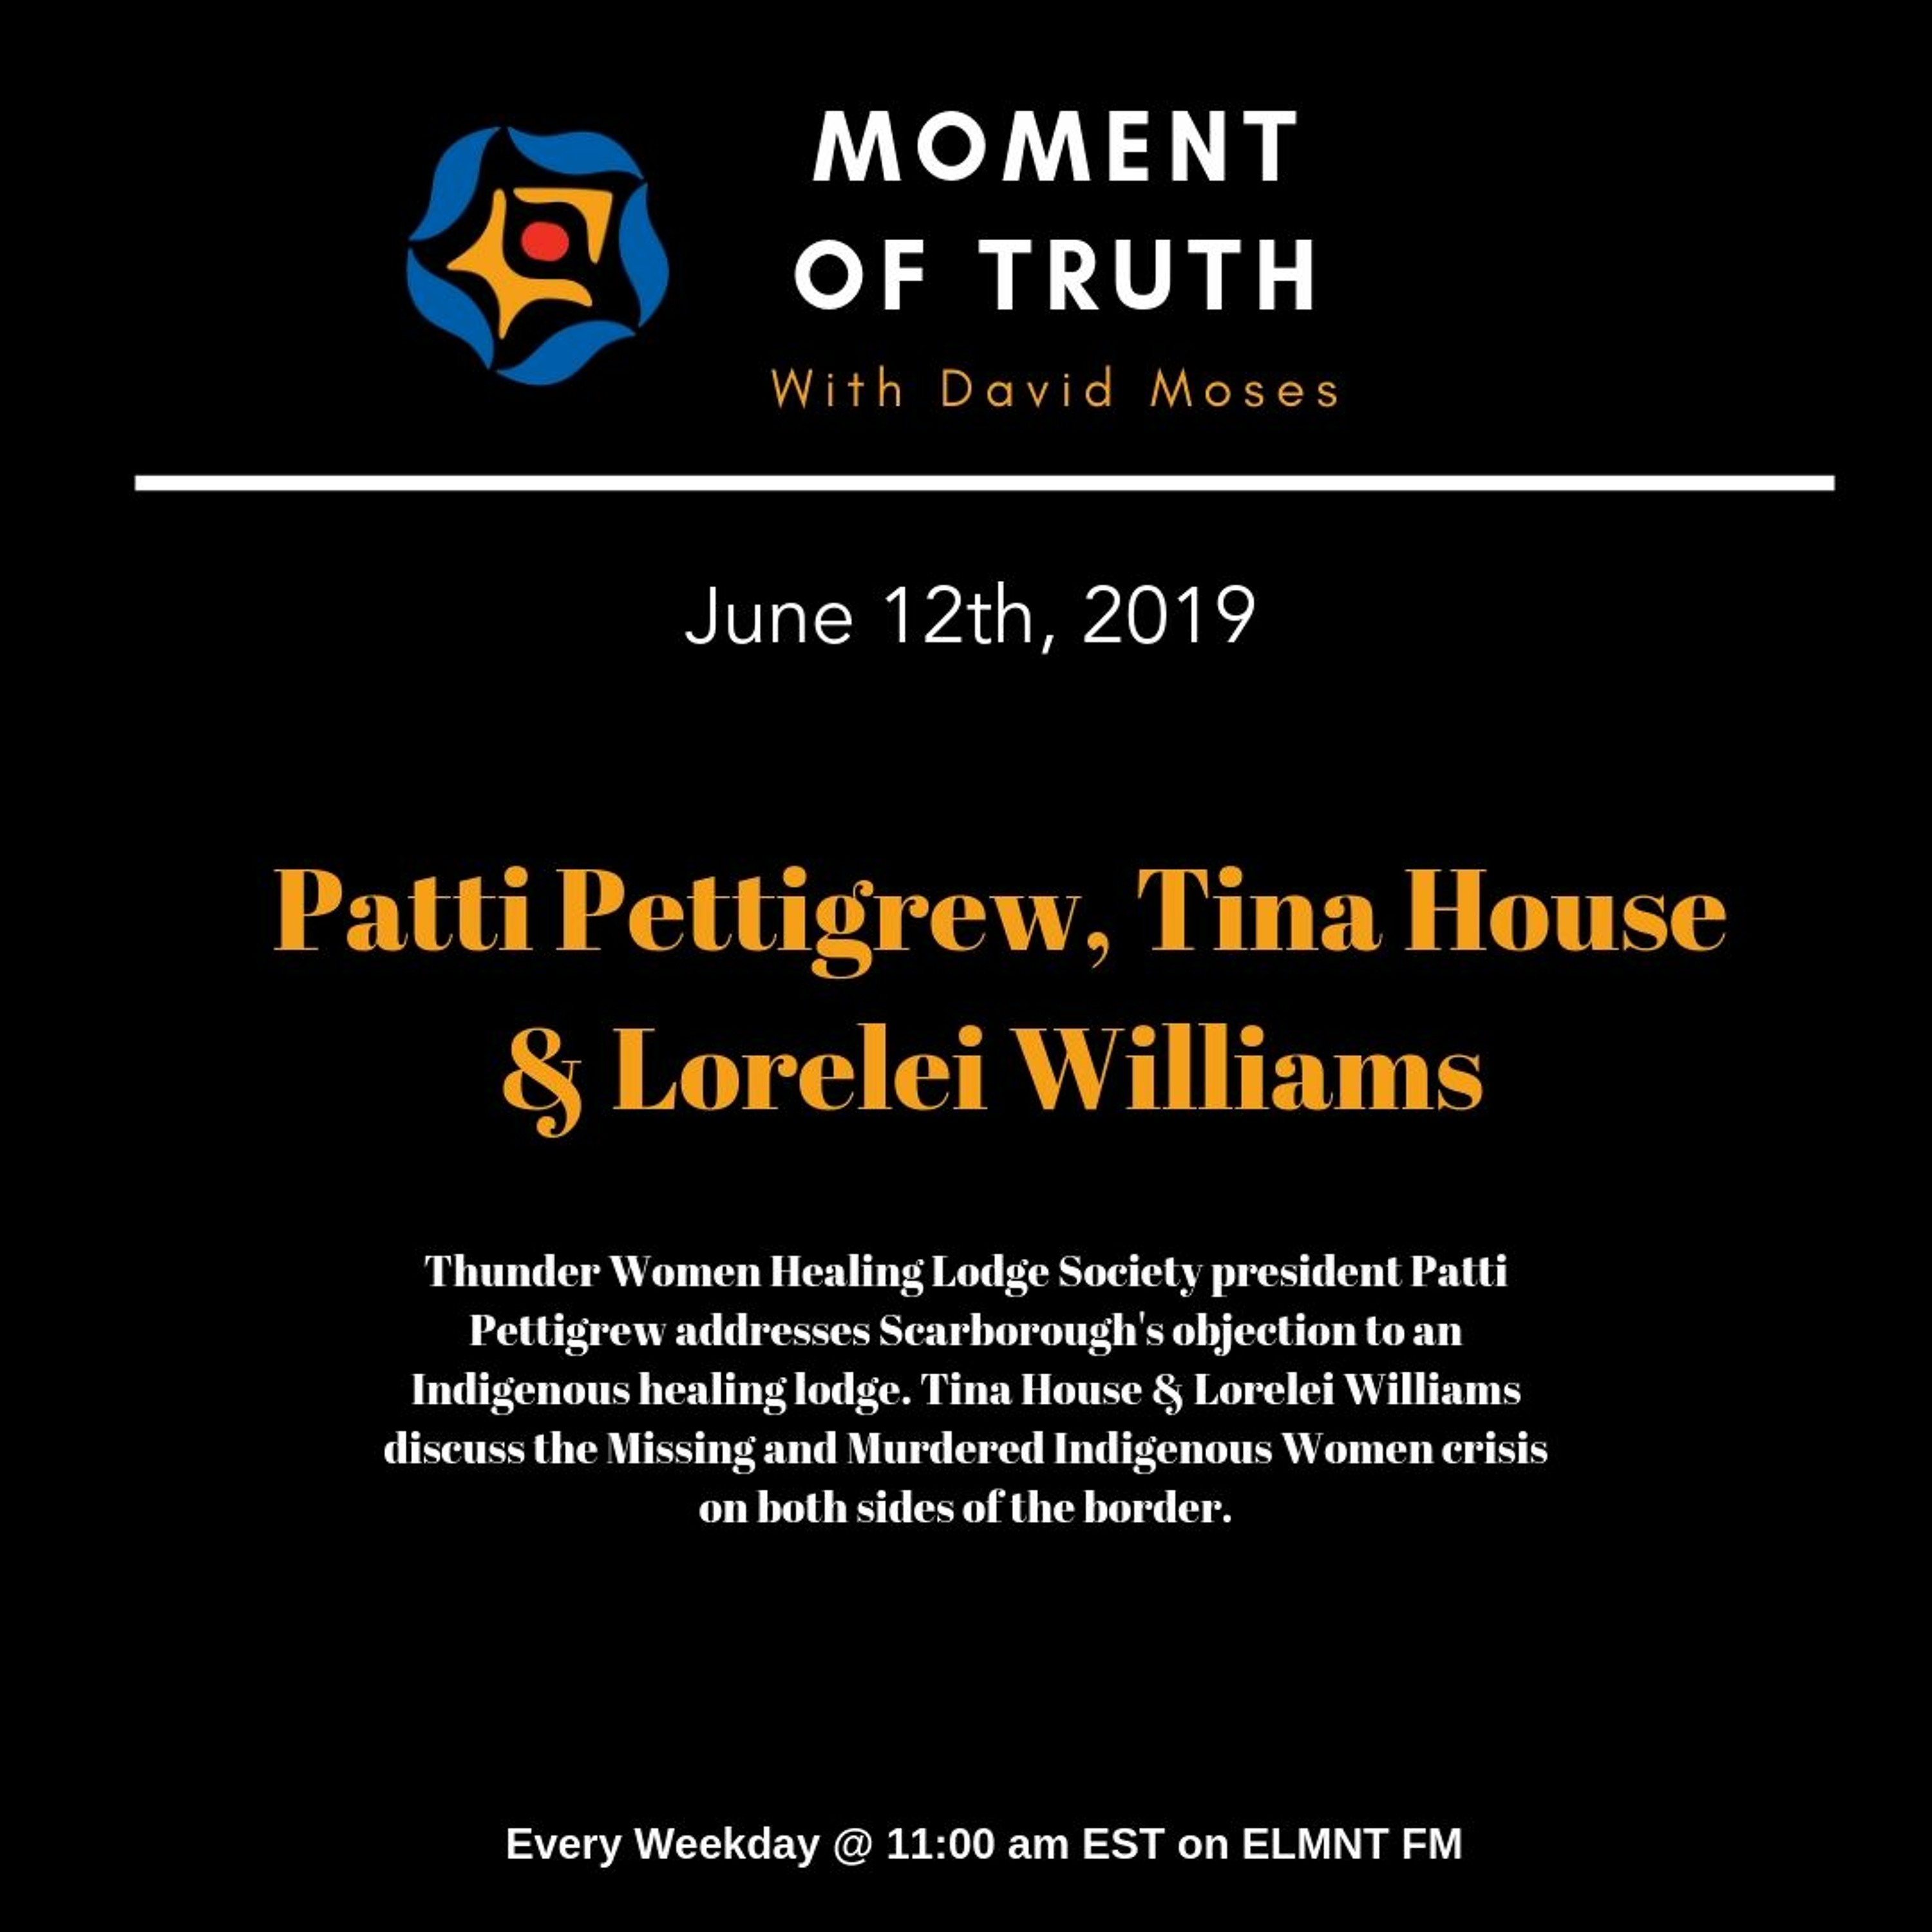 MOMENT OF TRUTH - Patti Pettigrew, Tina House & Lorelei Williams (June 12th, 2019)